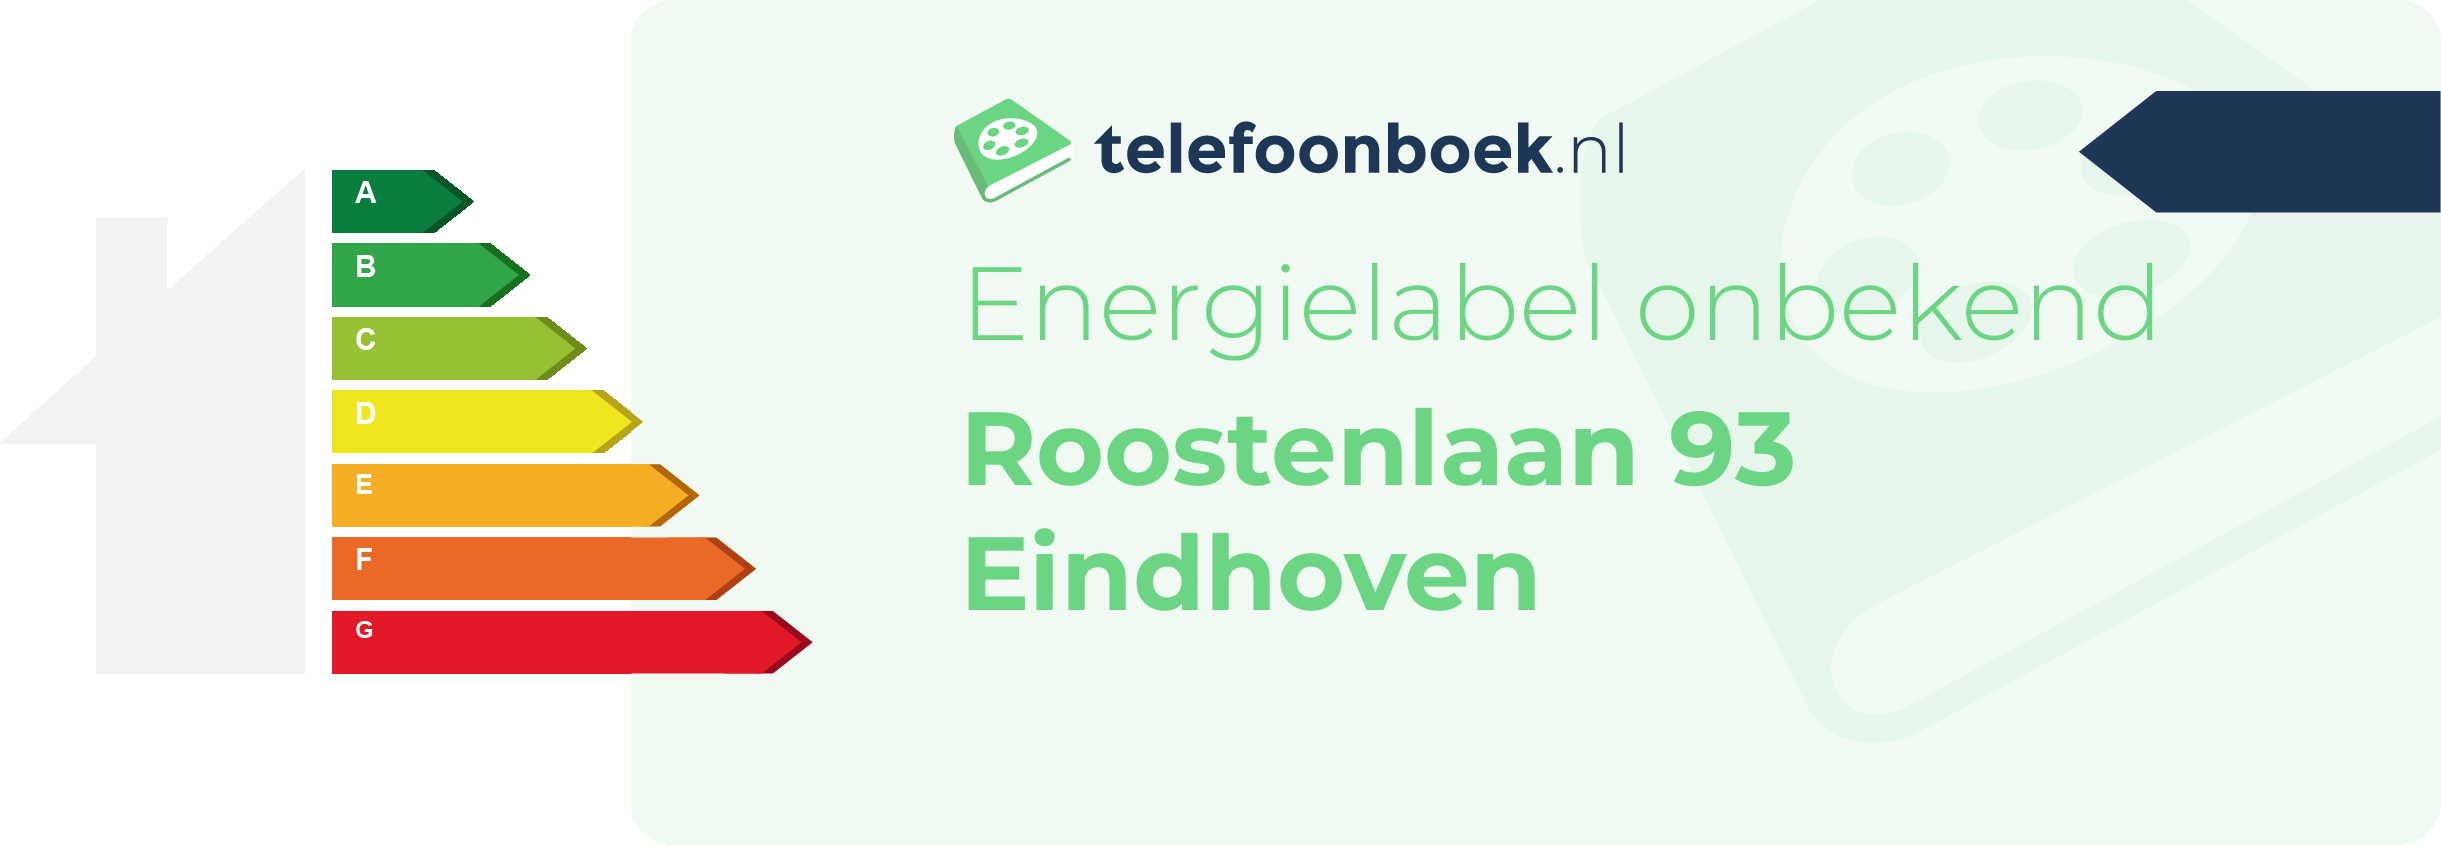 Energielabel Roostenlaan 93 Eindhoven